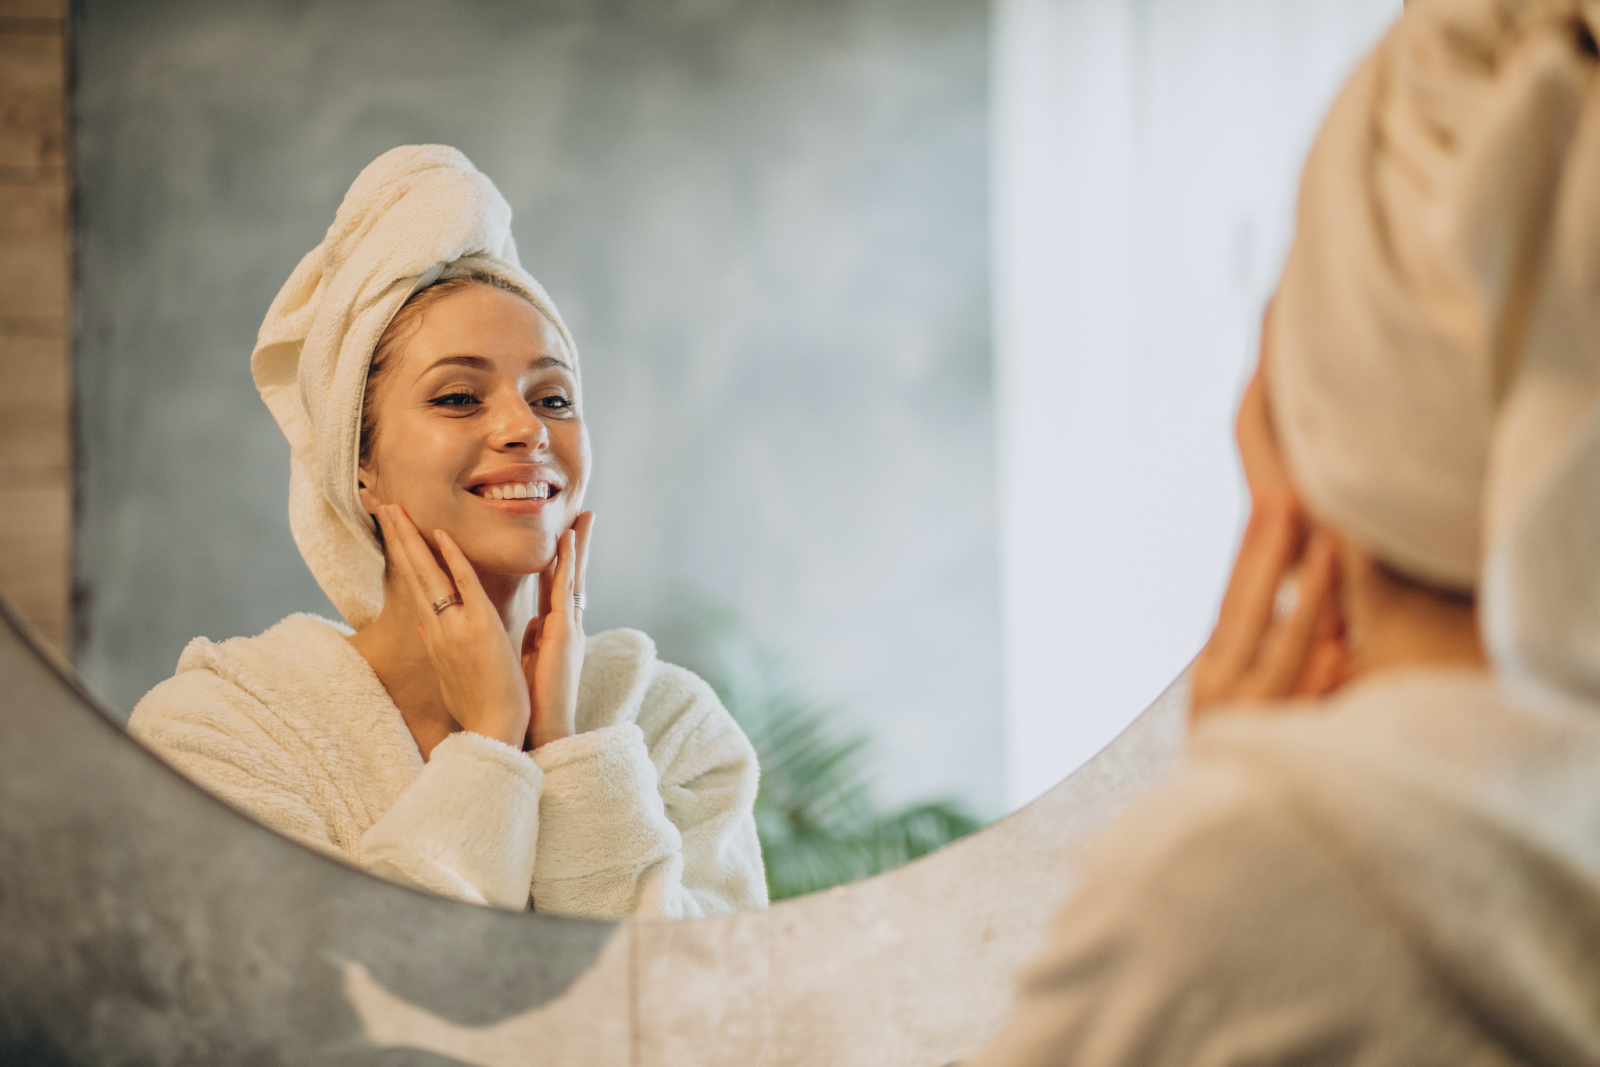 alt text: mulher se olhando no espelho usando um roupão branco e conferindo o resultado da sua skincare 